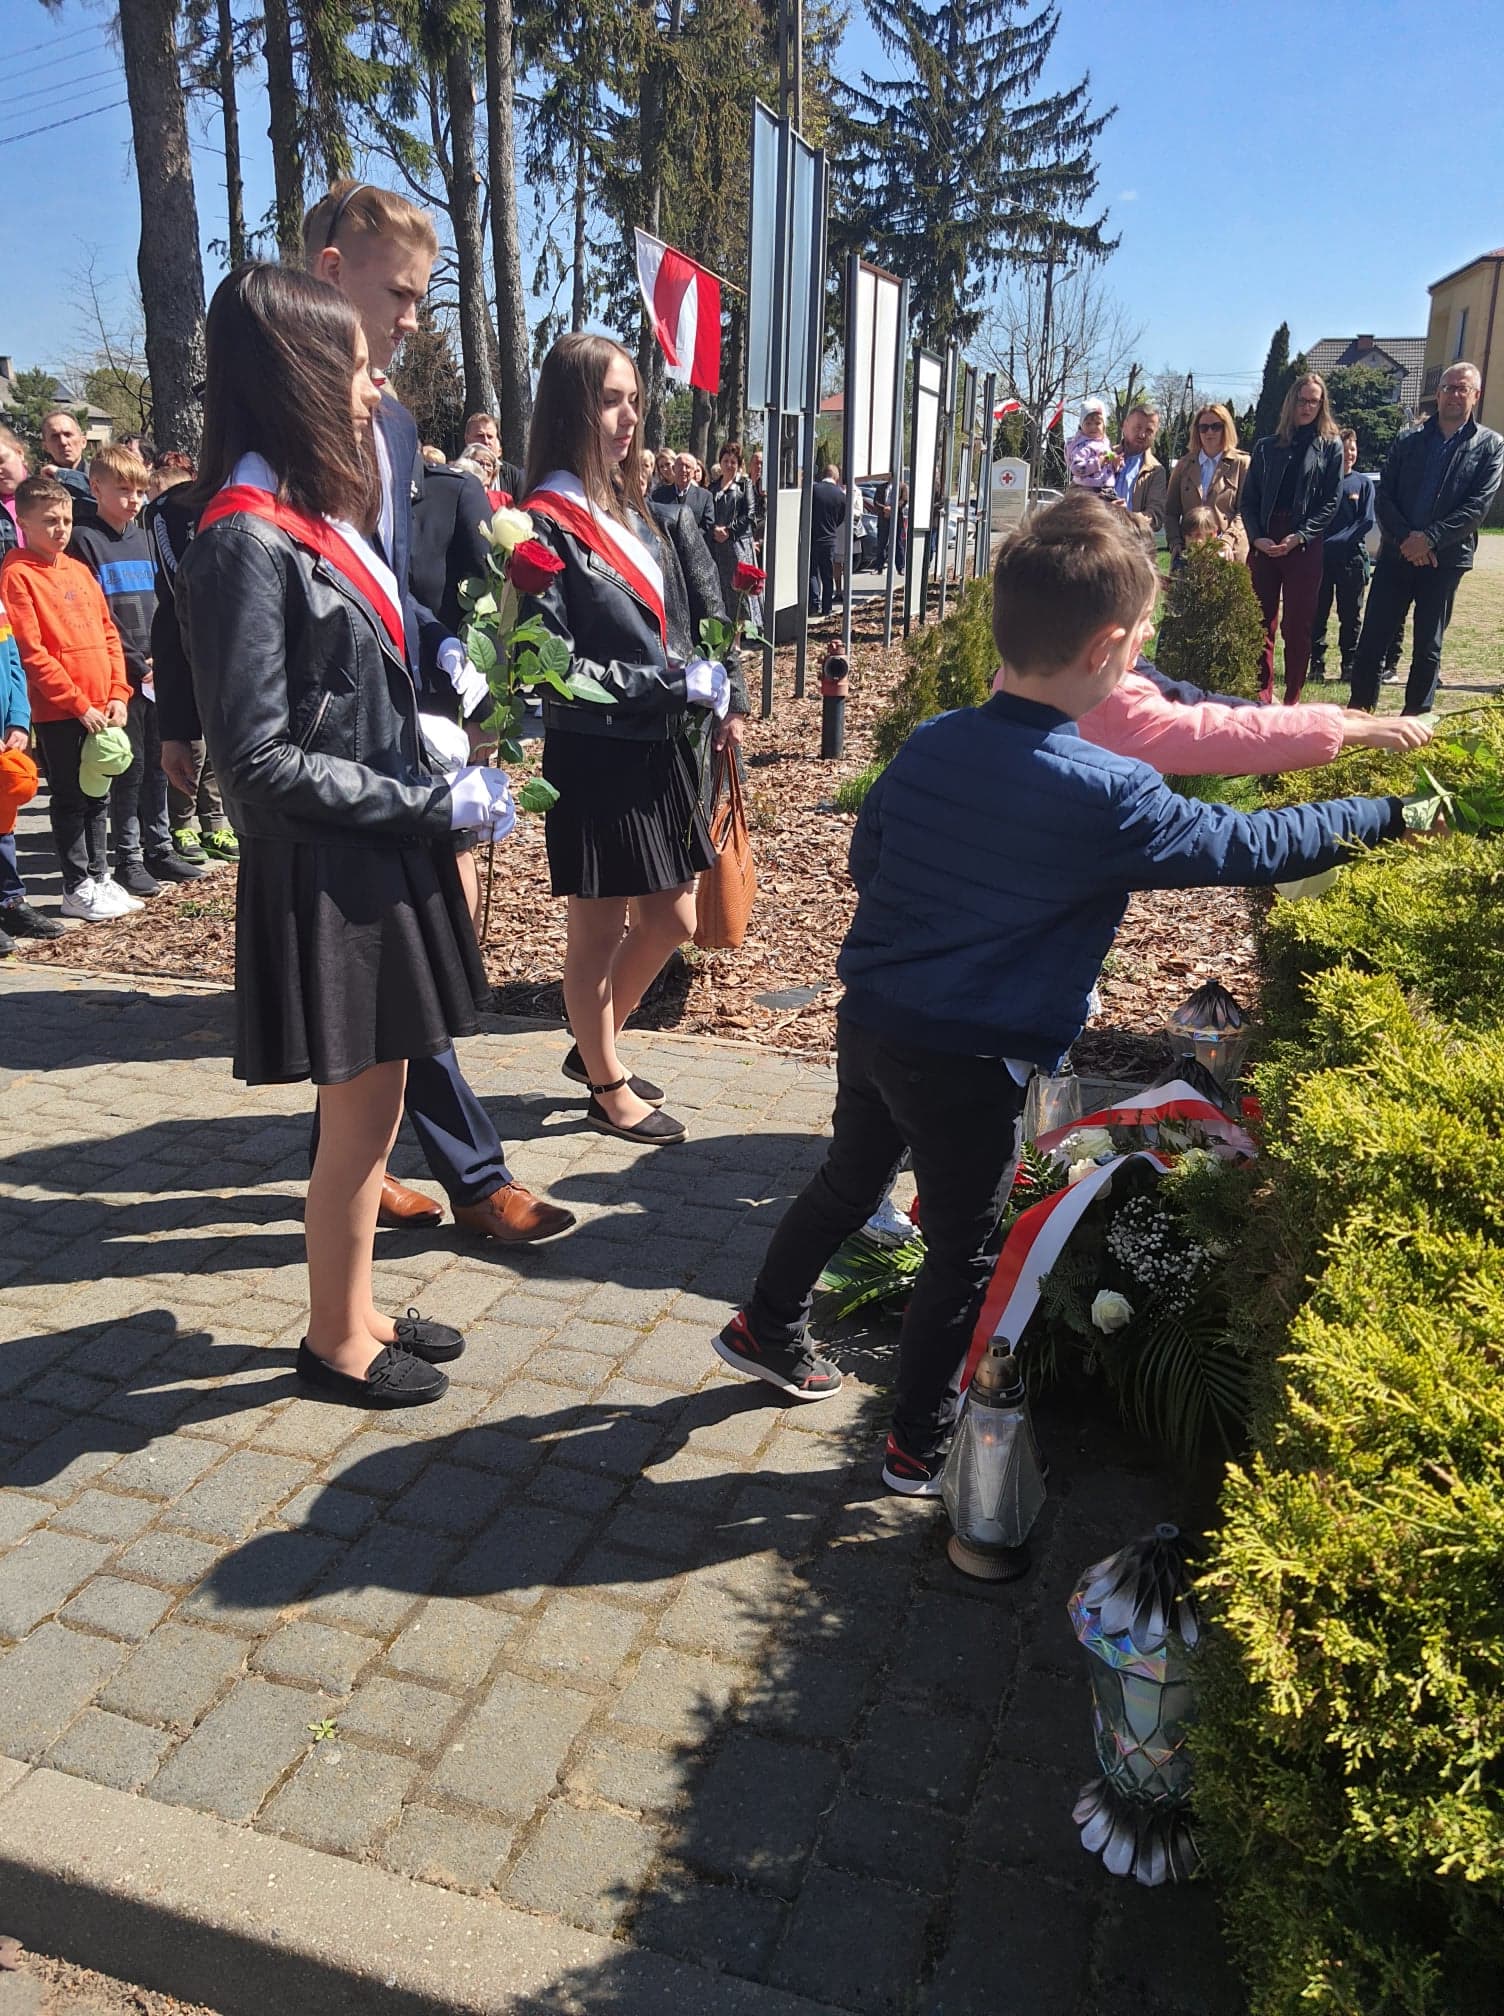 Dzieci i młodzież szkolna składają pod pomnikiem kwiaty w barwach biało-czerwonych.